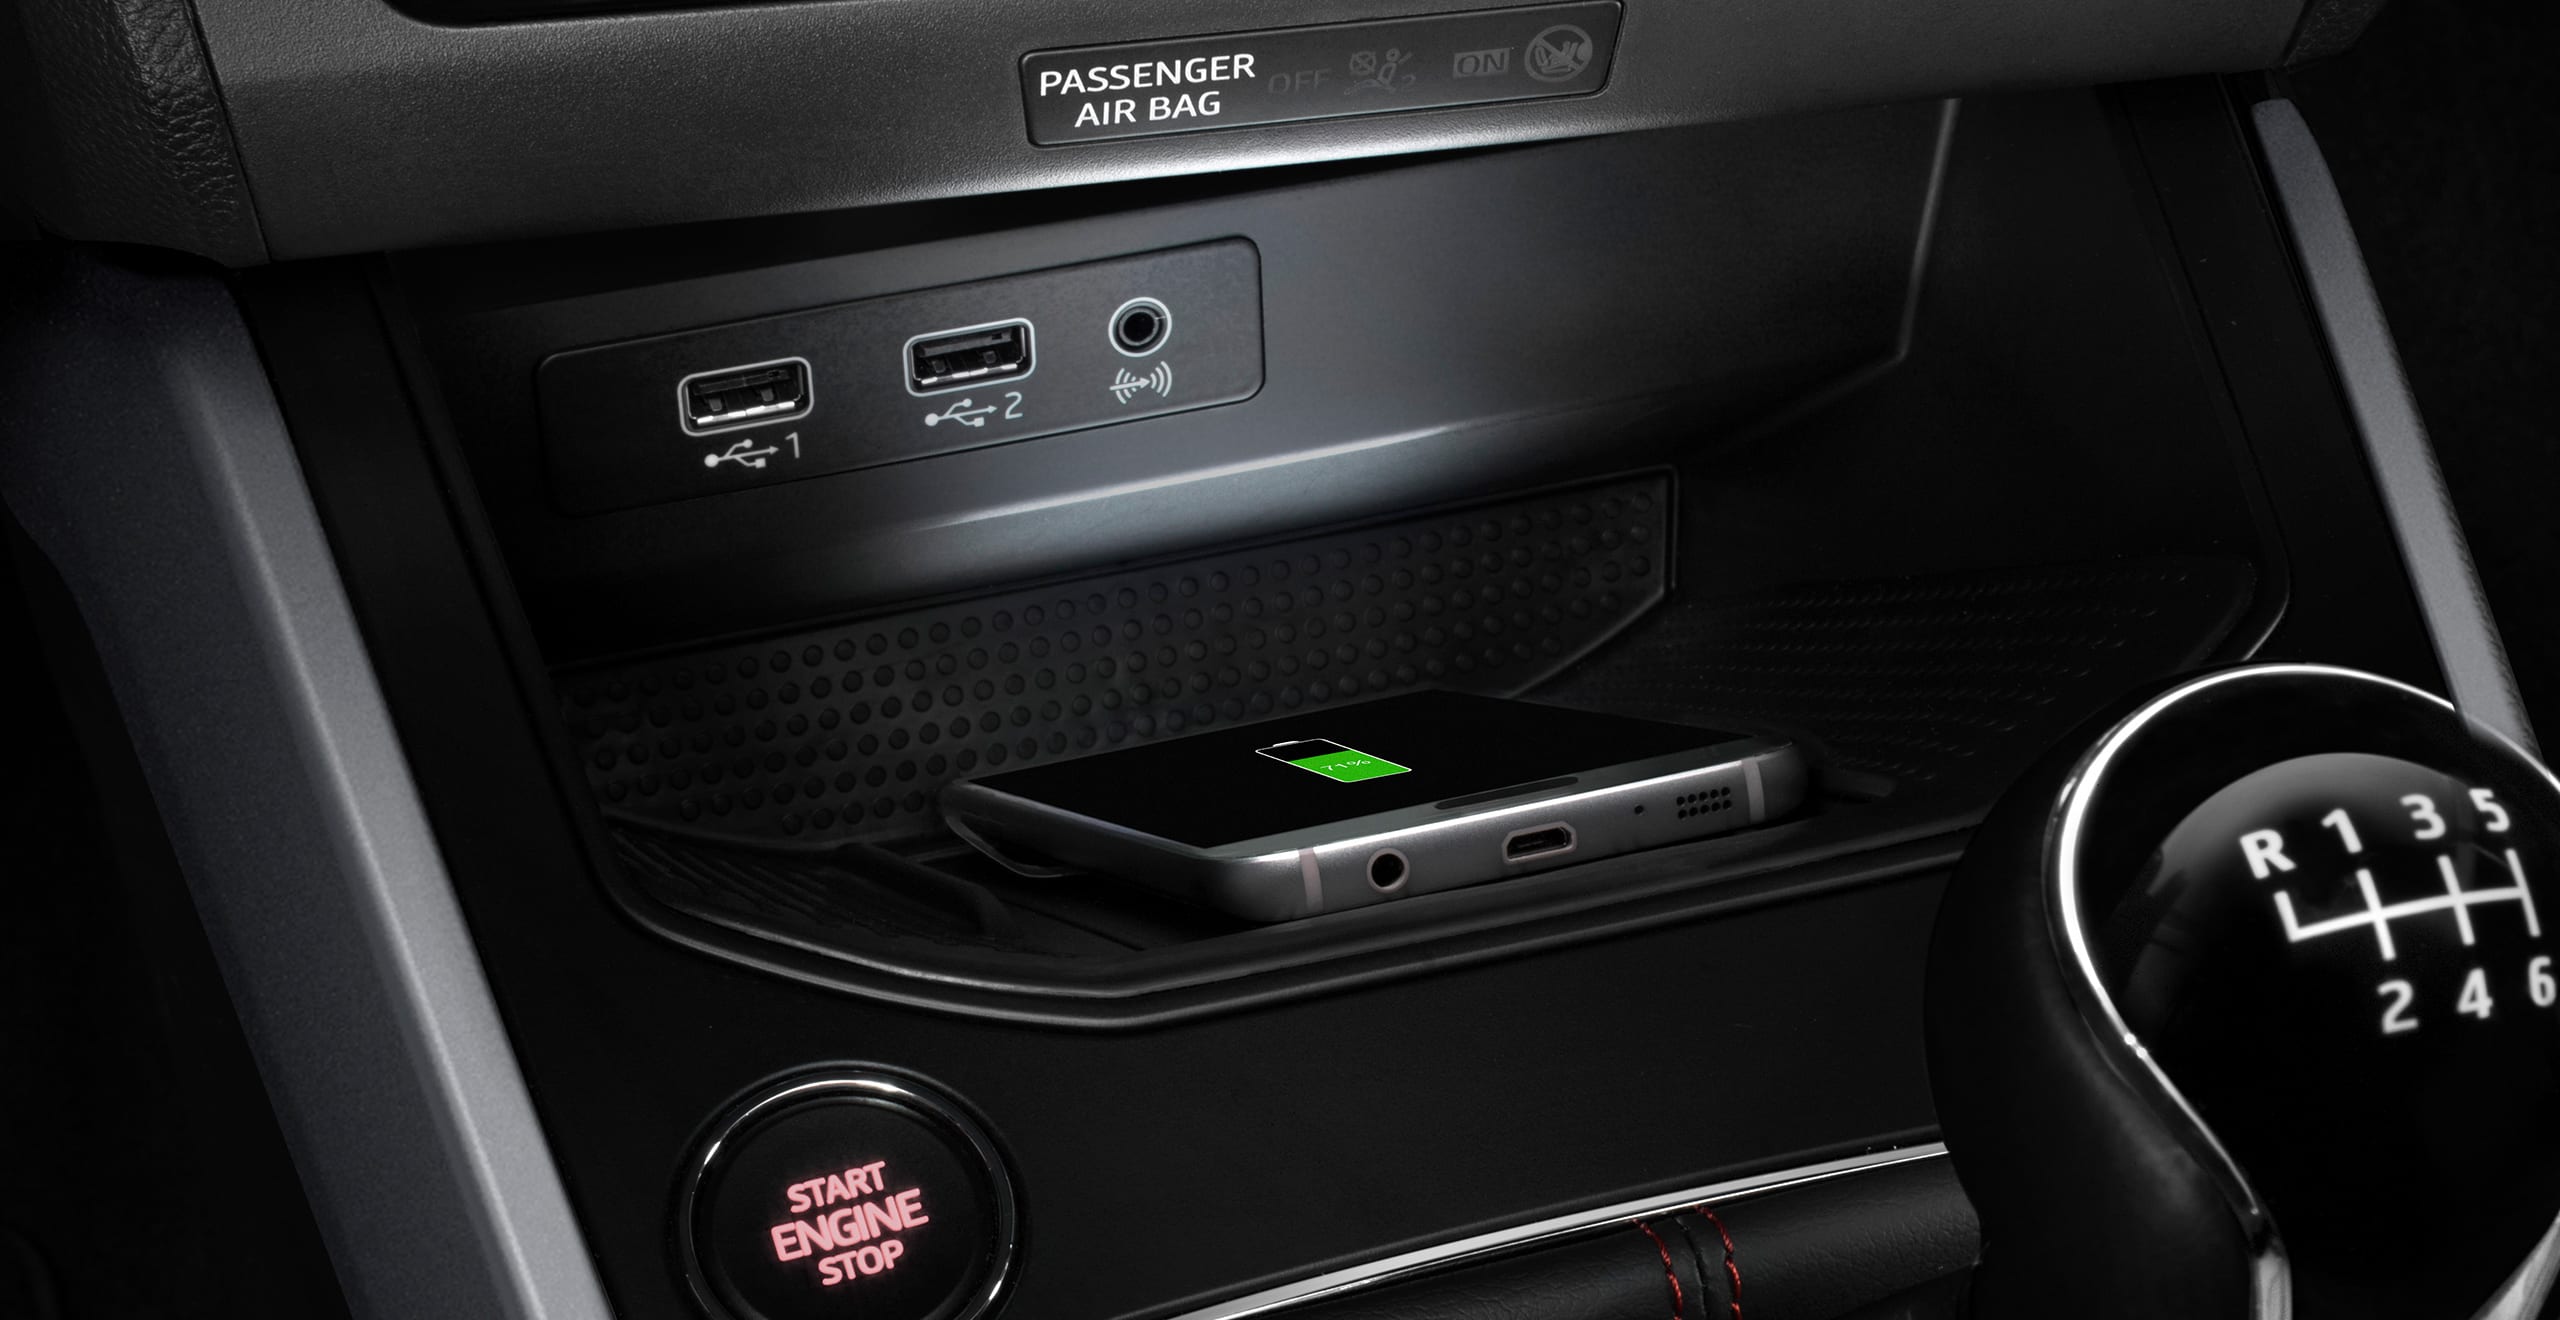 SEAT Arona ātrumpārslēga sviras bezvadu uzlādes tehnoloģija. Attēlota GSM antena, USB un connectivity box